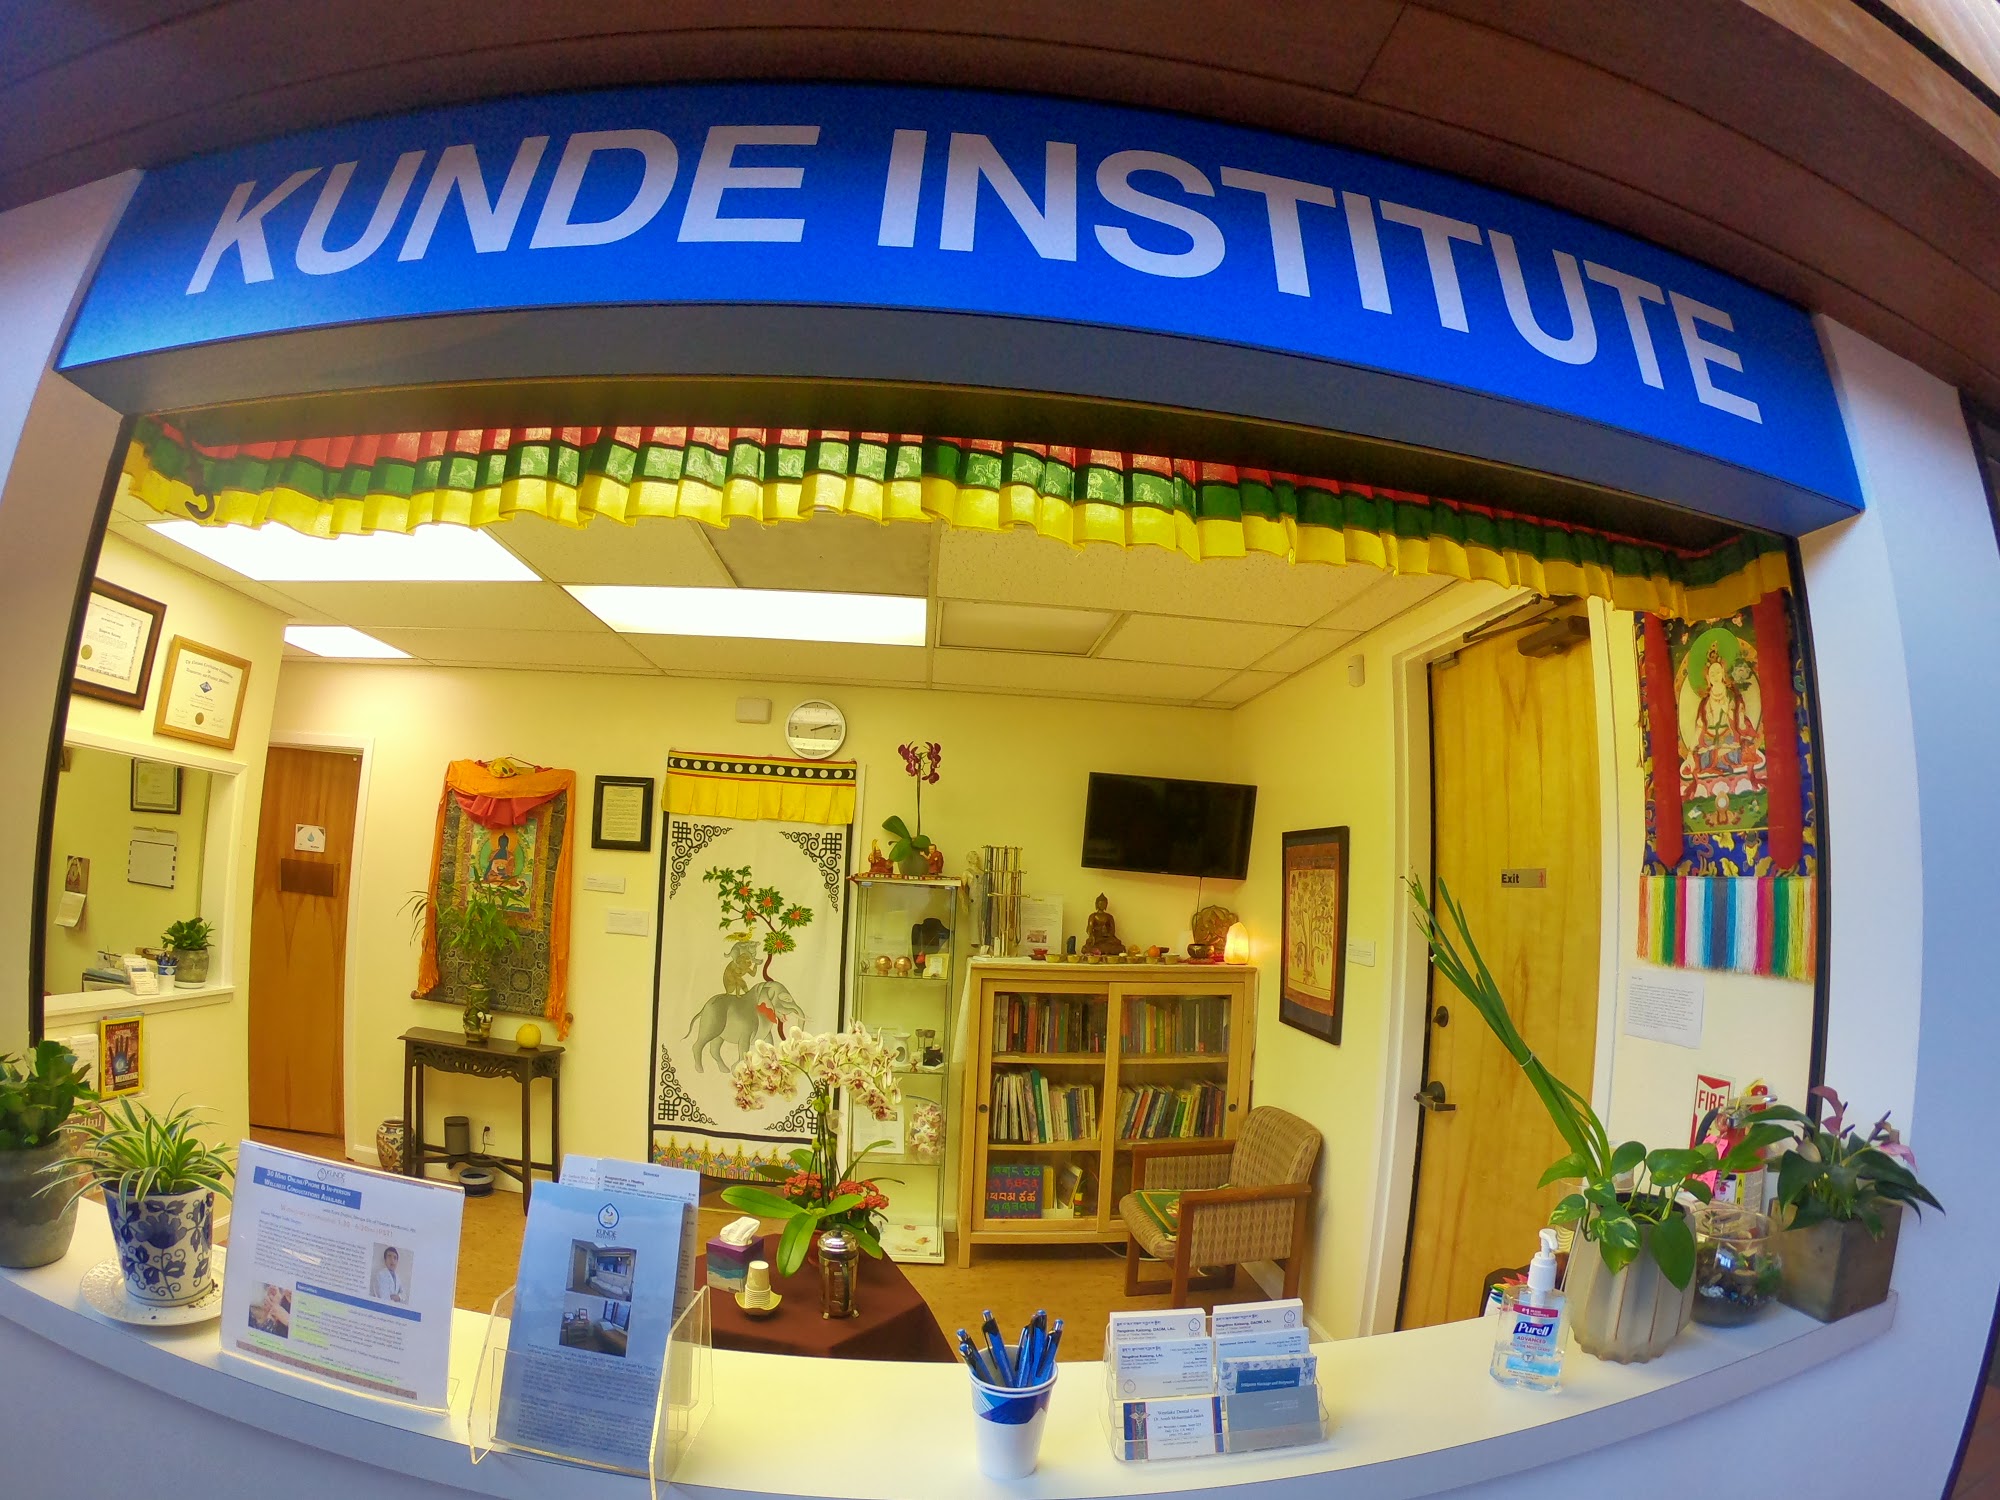 Kunde Institute